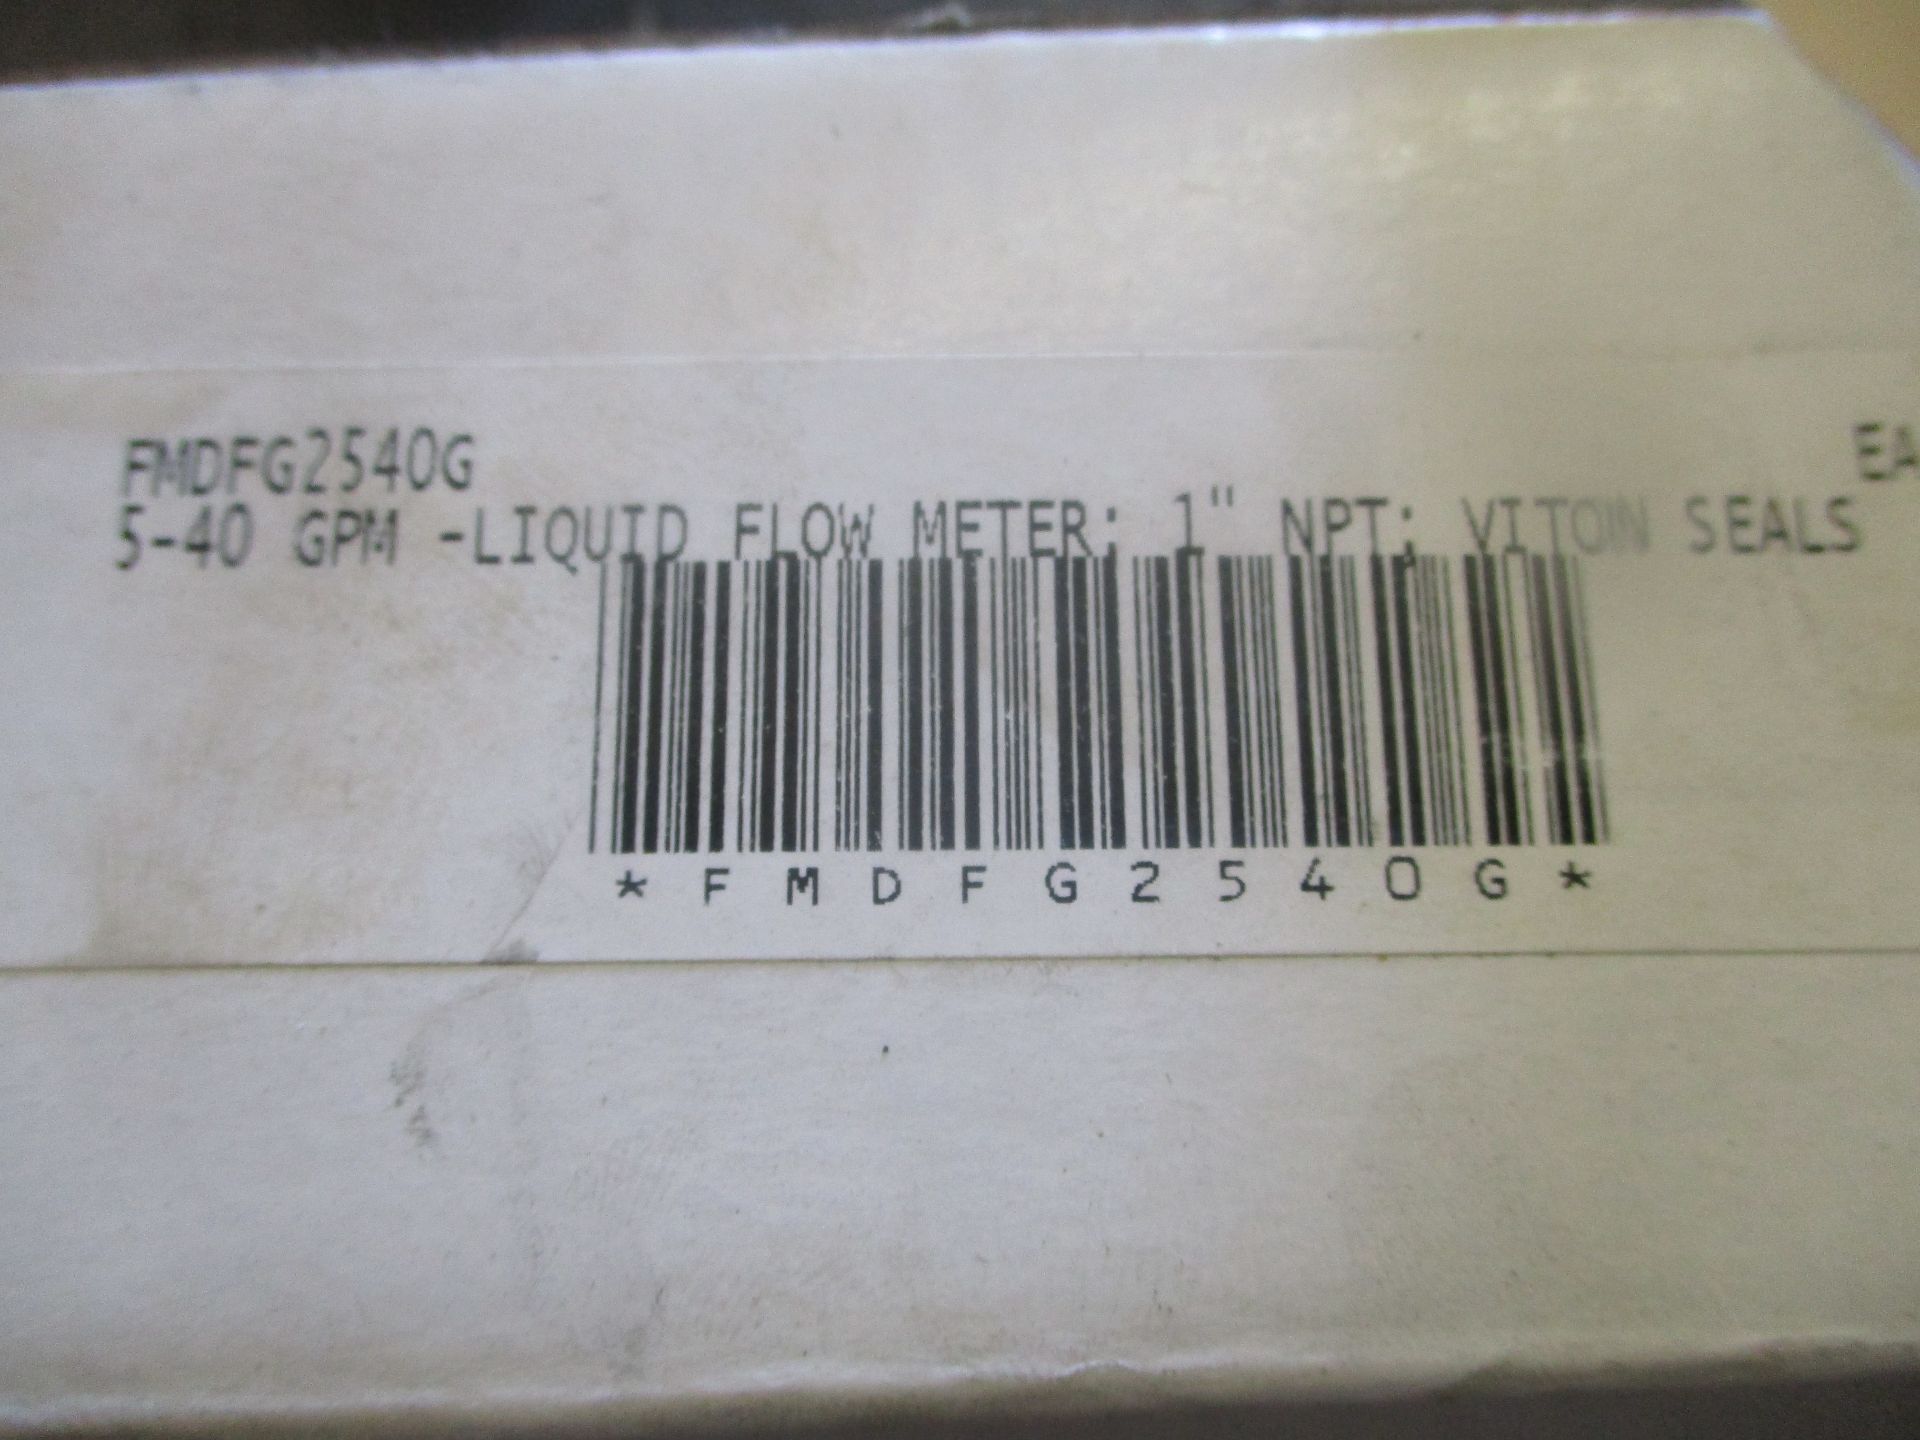 Liquid Flow Meter, 1" NPT, new in box - Image 2 of 2